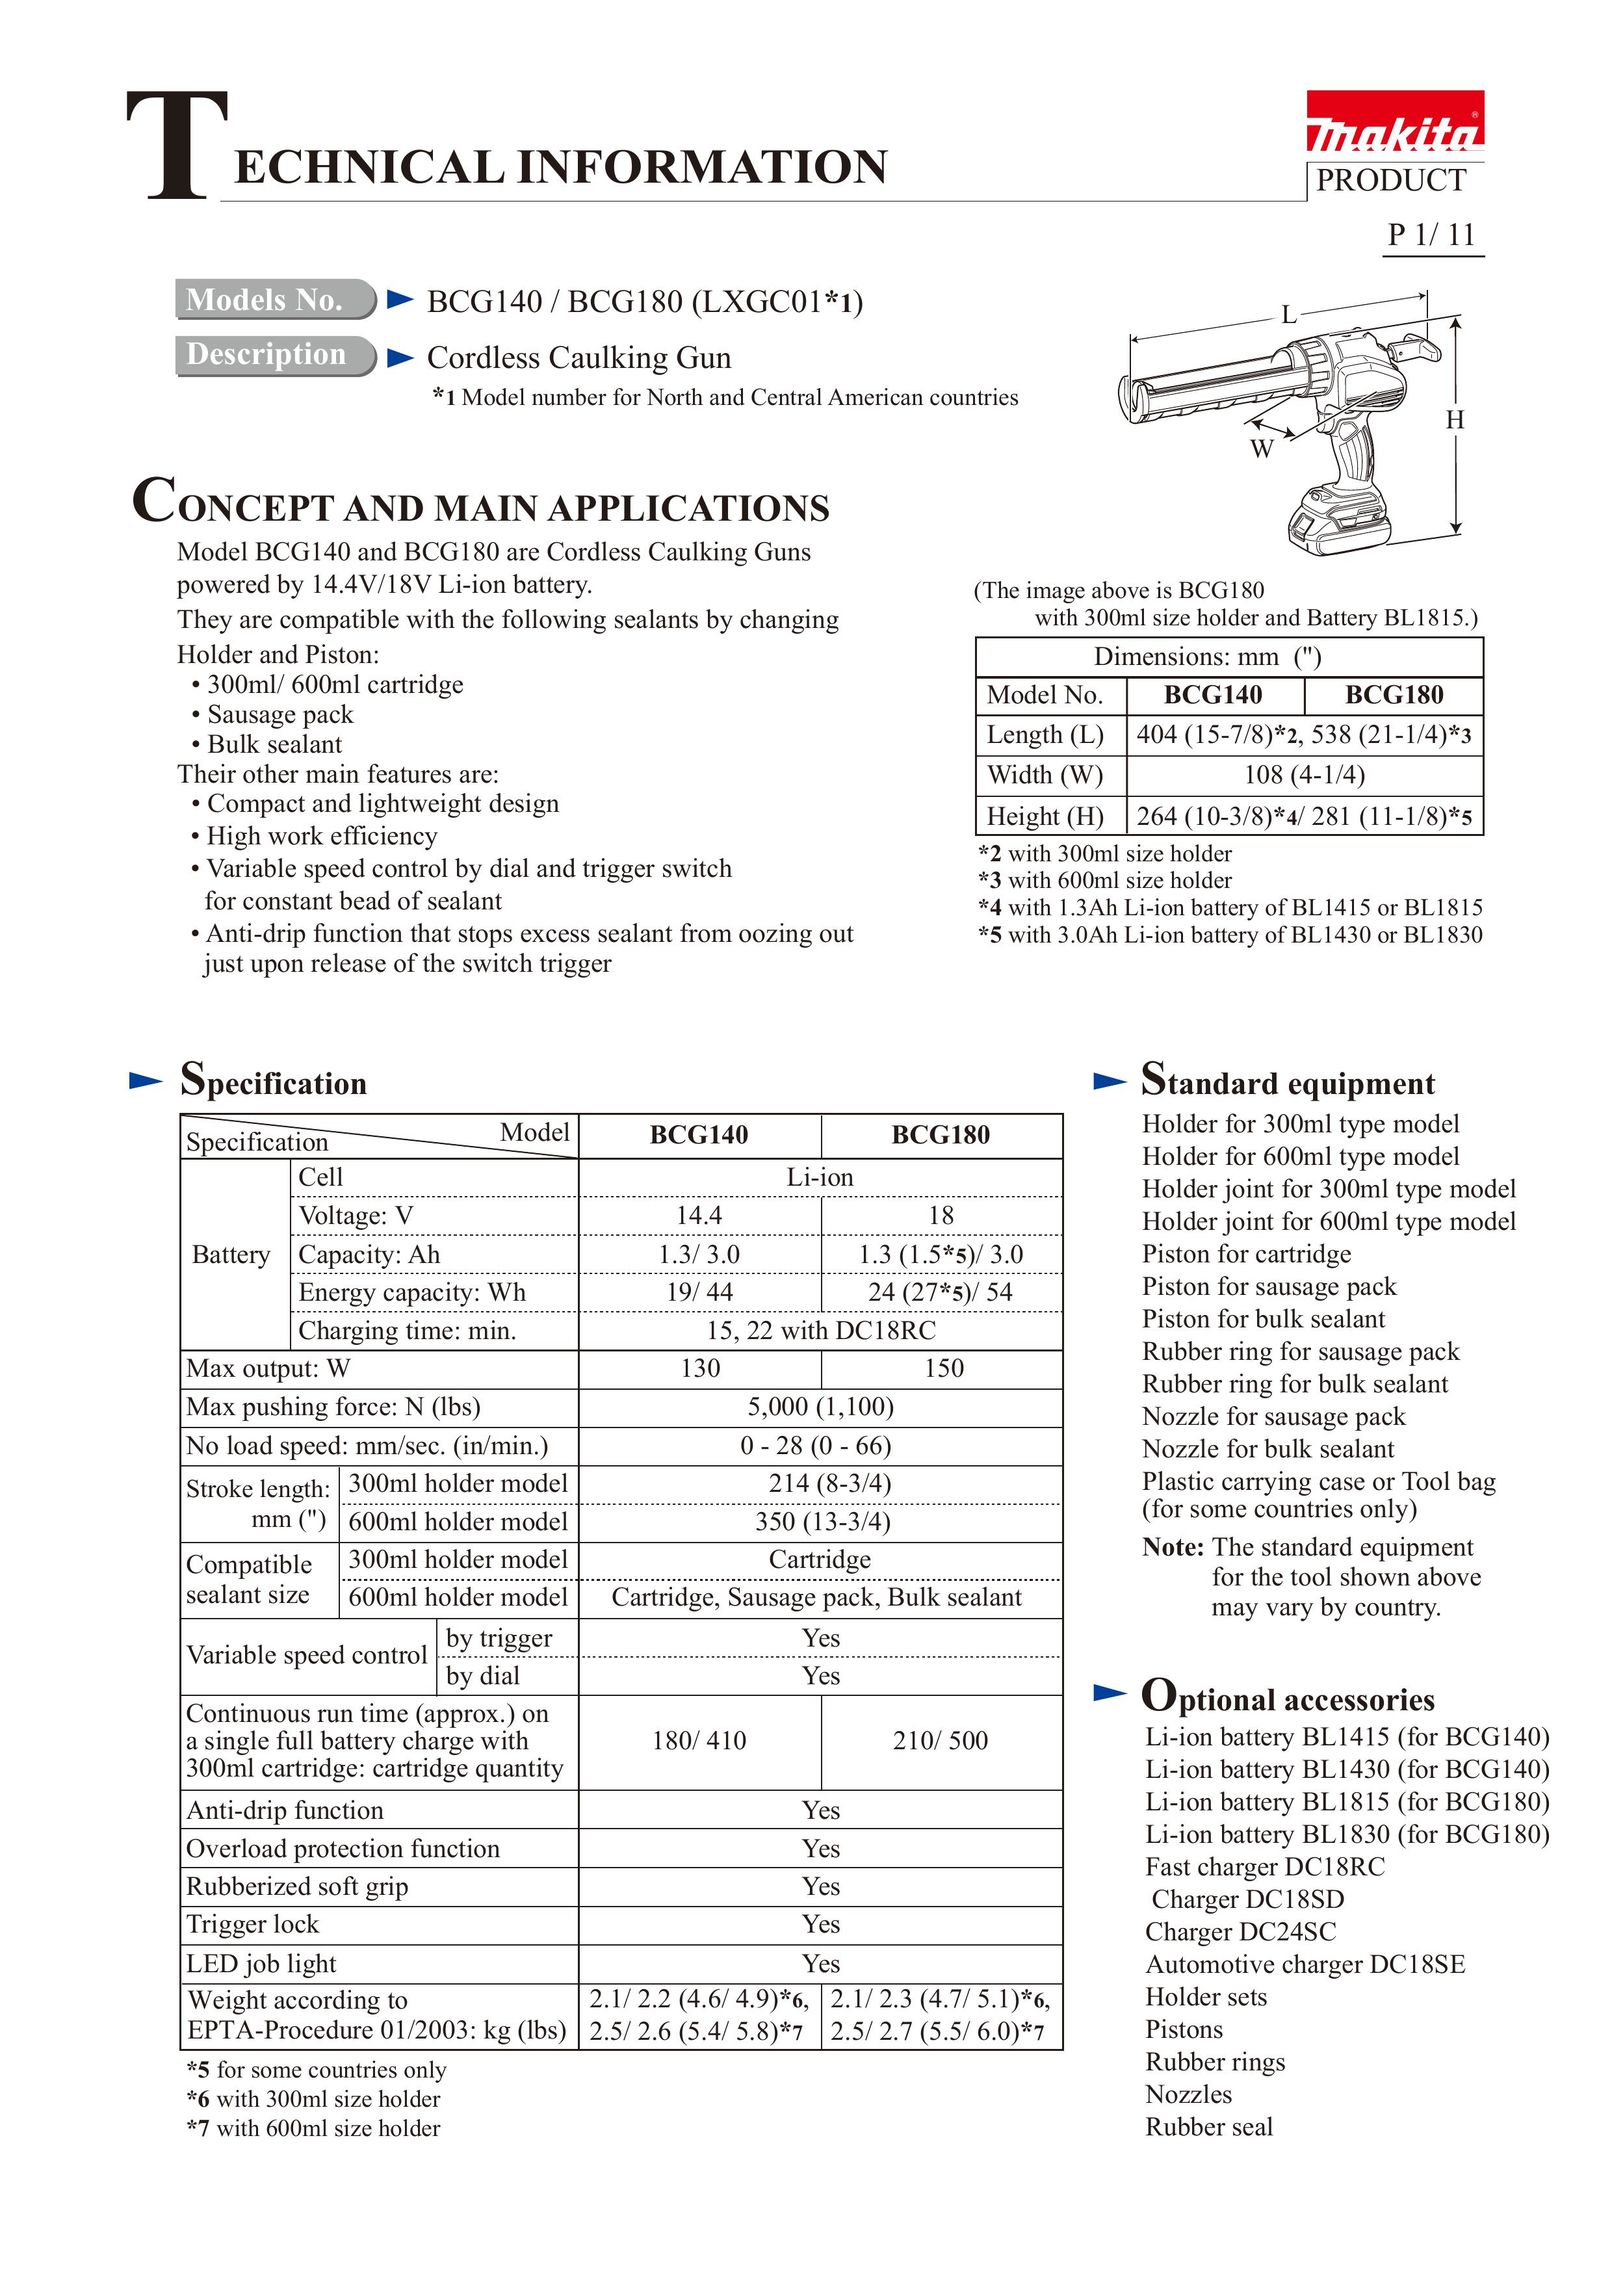 Makita CG140 Caulking Gun User Manual